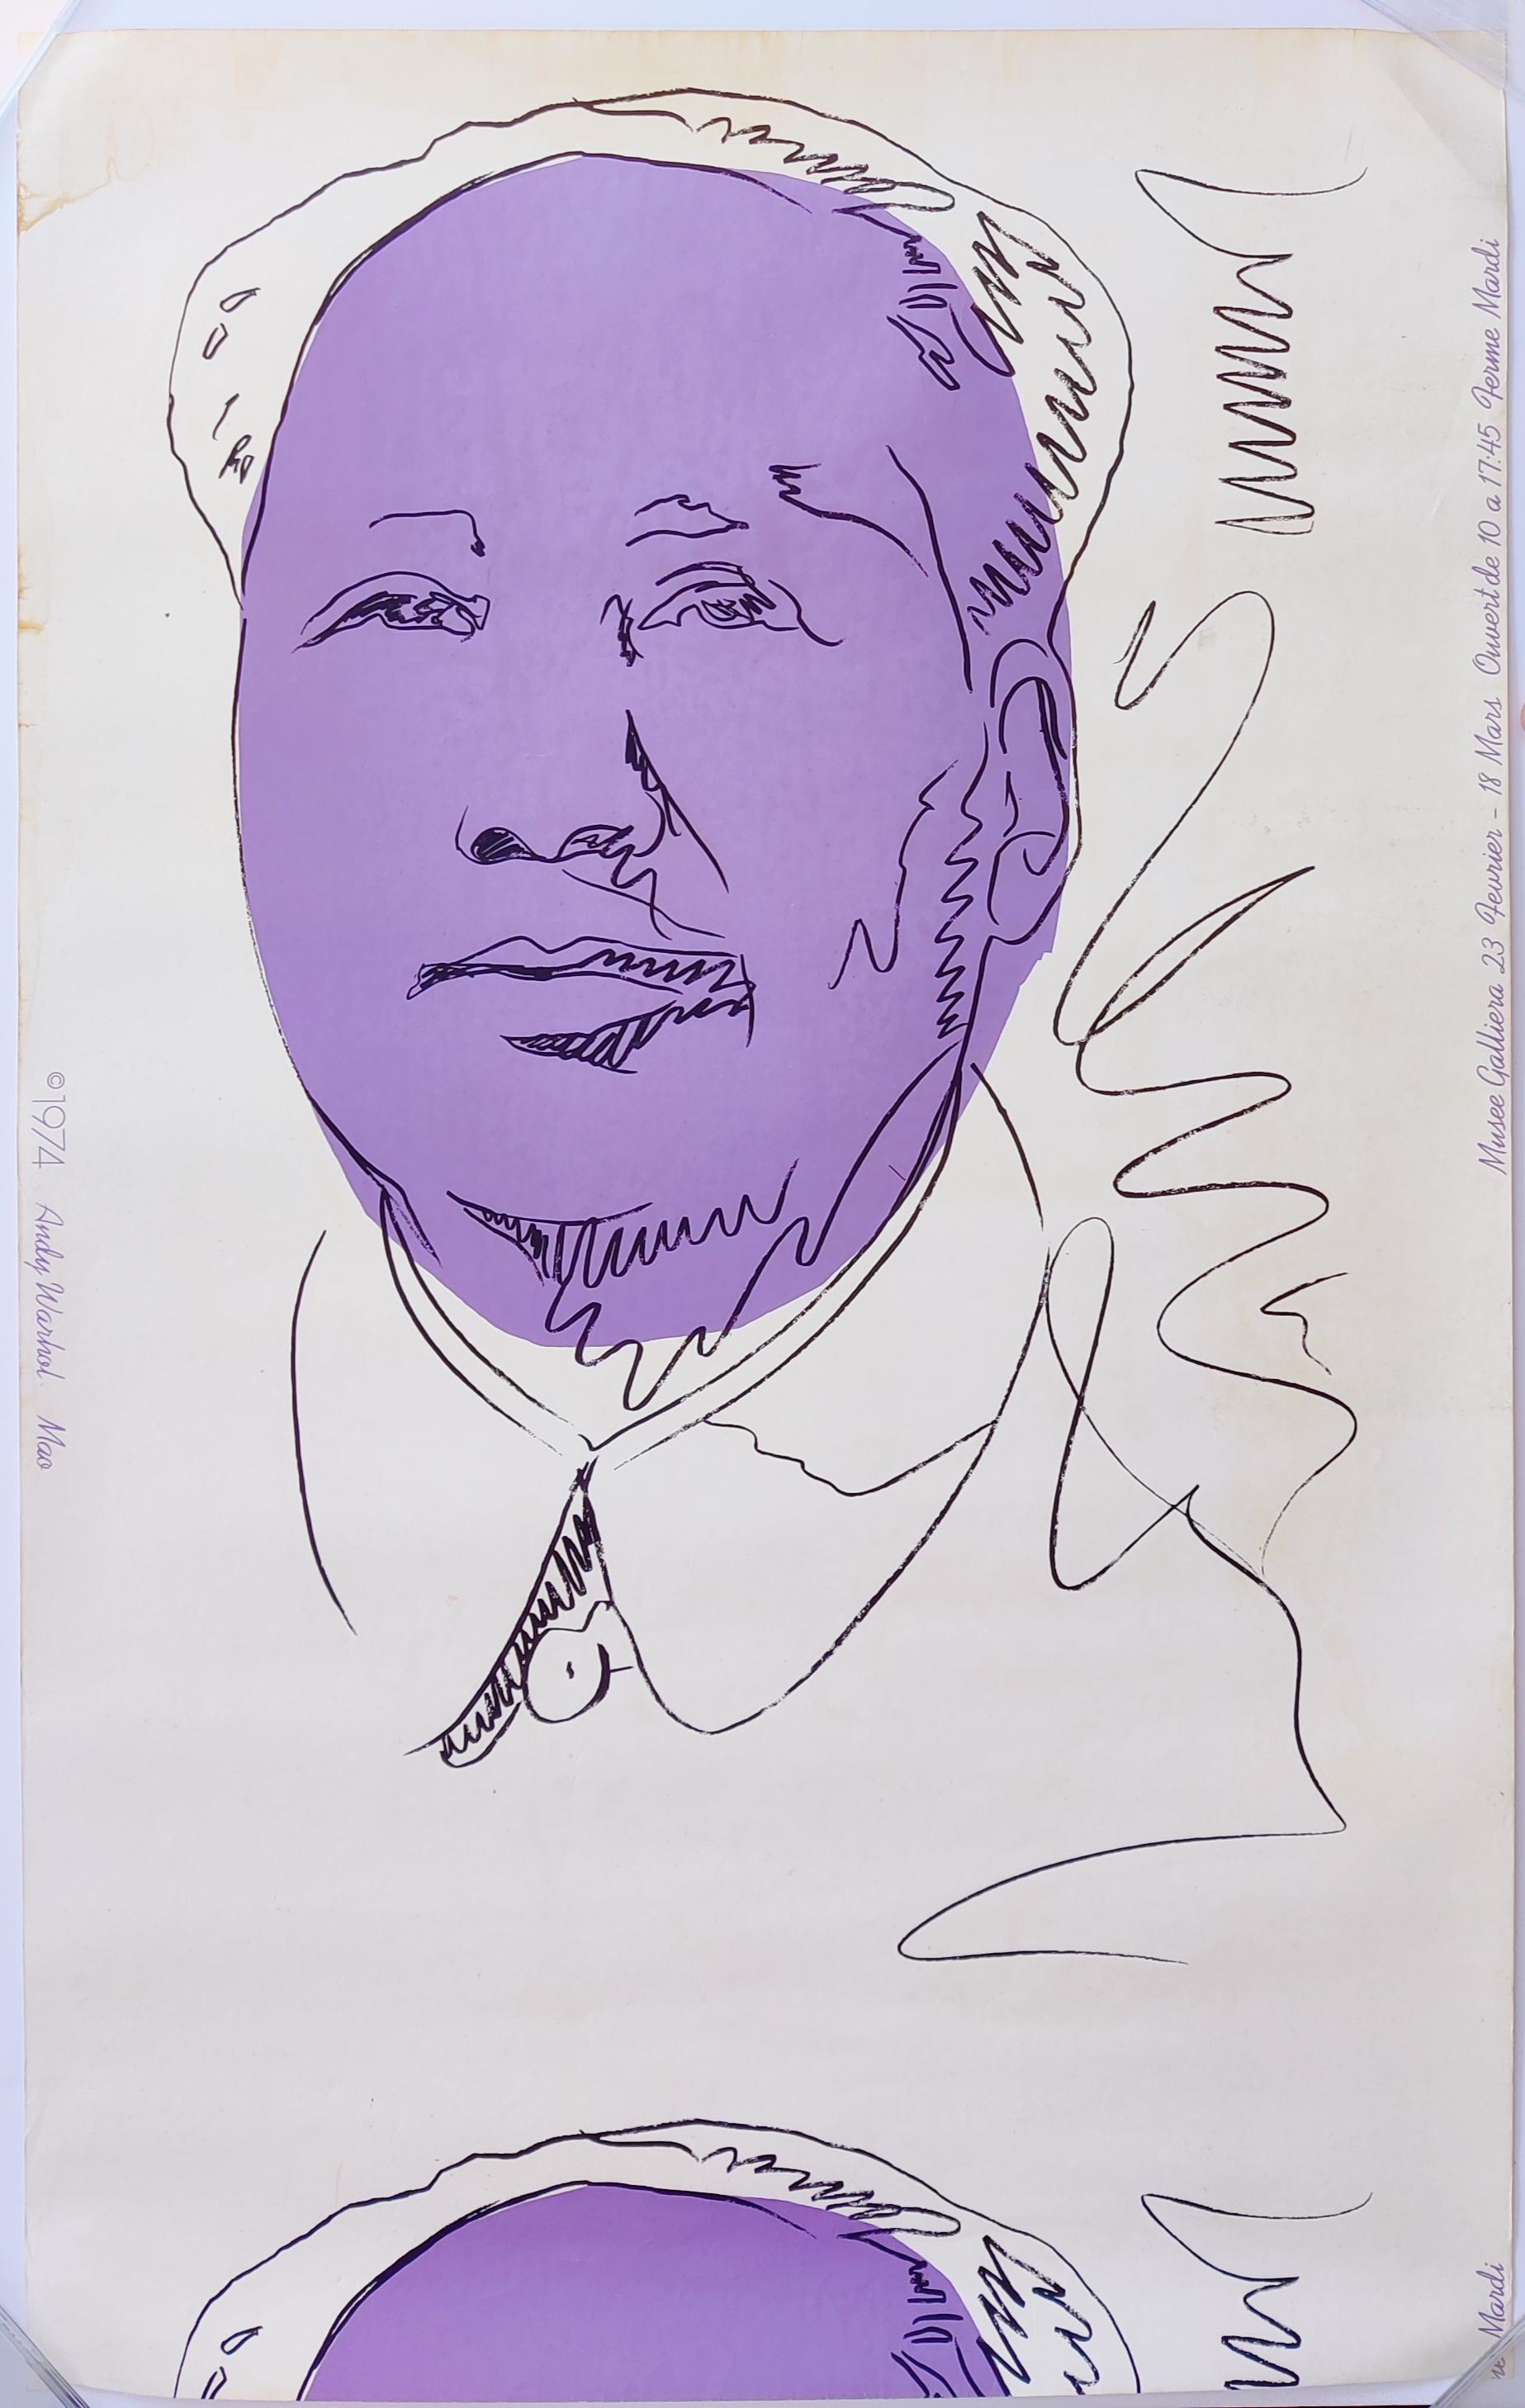 Andy Warhol
Mao (papier peint) 
1974
Sérigraphie en couleurs, sur papier peint
Taille de la feuille. 118 x 72 cm 
Une partie de l'installation originale de l'exposition Andy Warhol : Mao au Musée Galliera, Paris, du 23 février au 18 mars